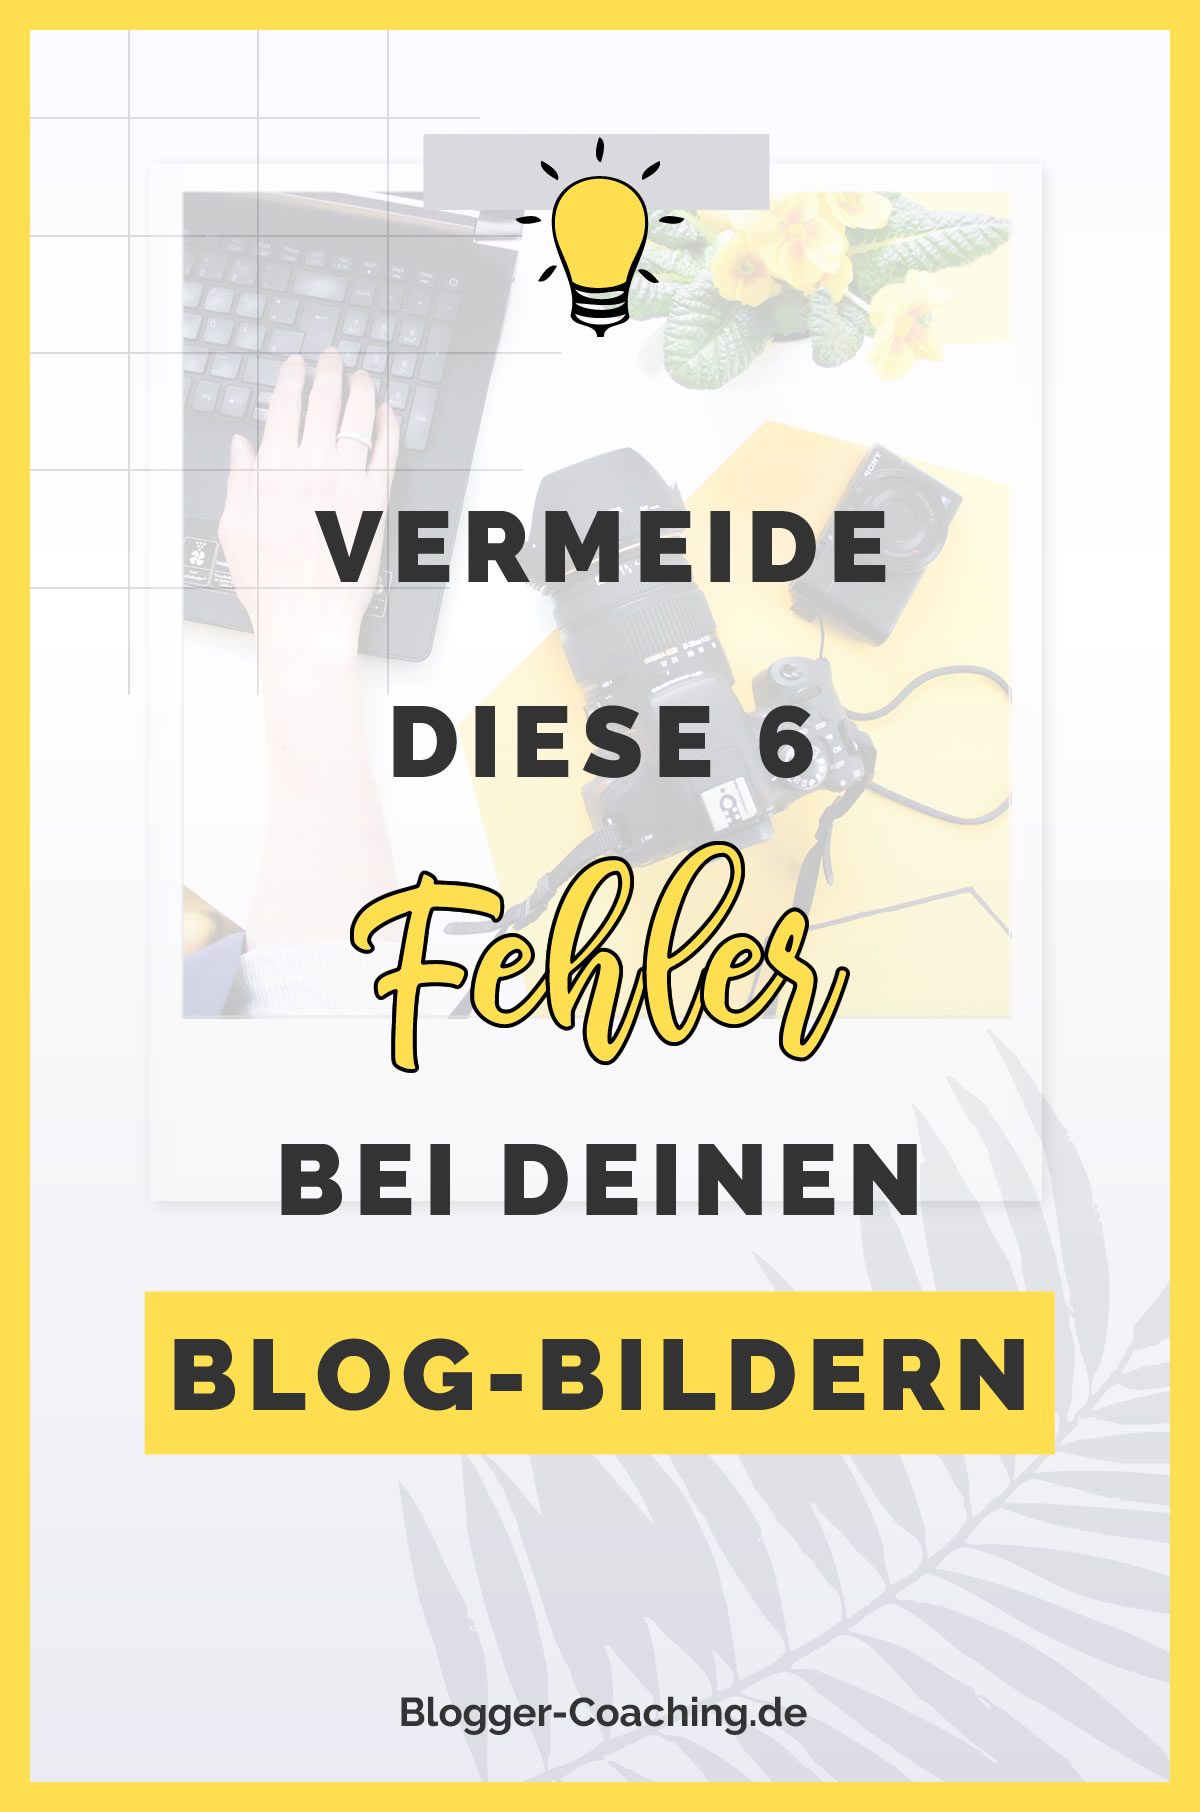 6 Anfängerfehler beim Bloggen und wie du sie vermeidest 2/3 | Blogger-Coaching.de - Erfolgreich bloggen & Geld verdienen #bloggen #erfolg